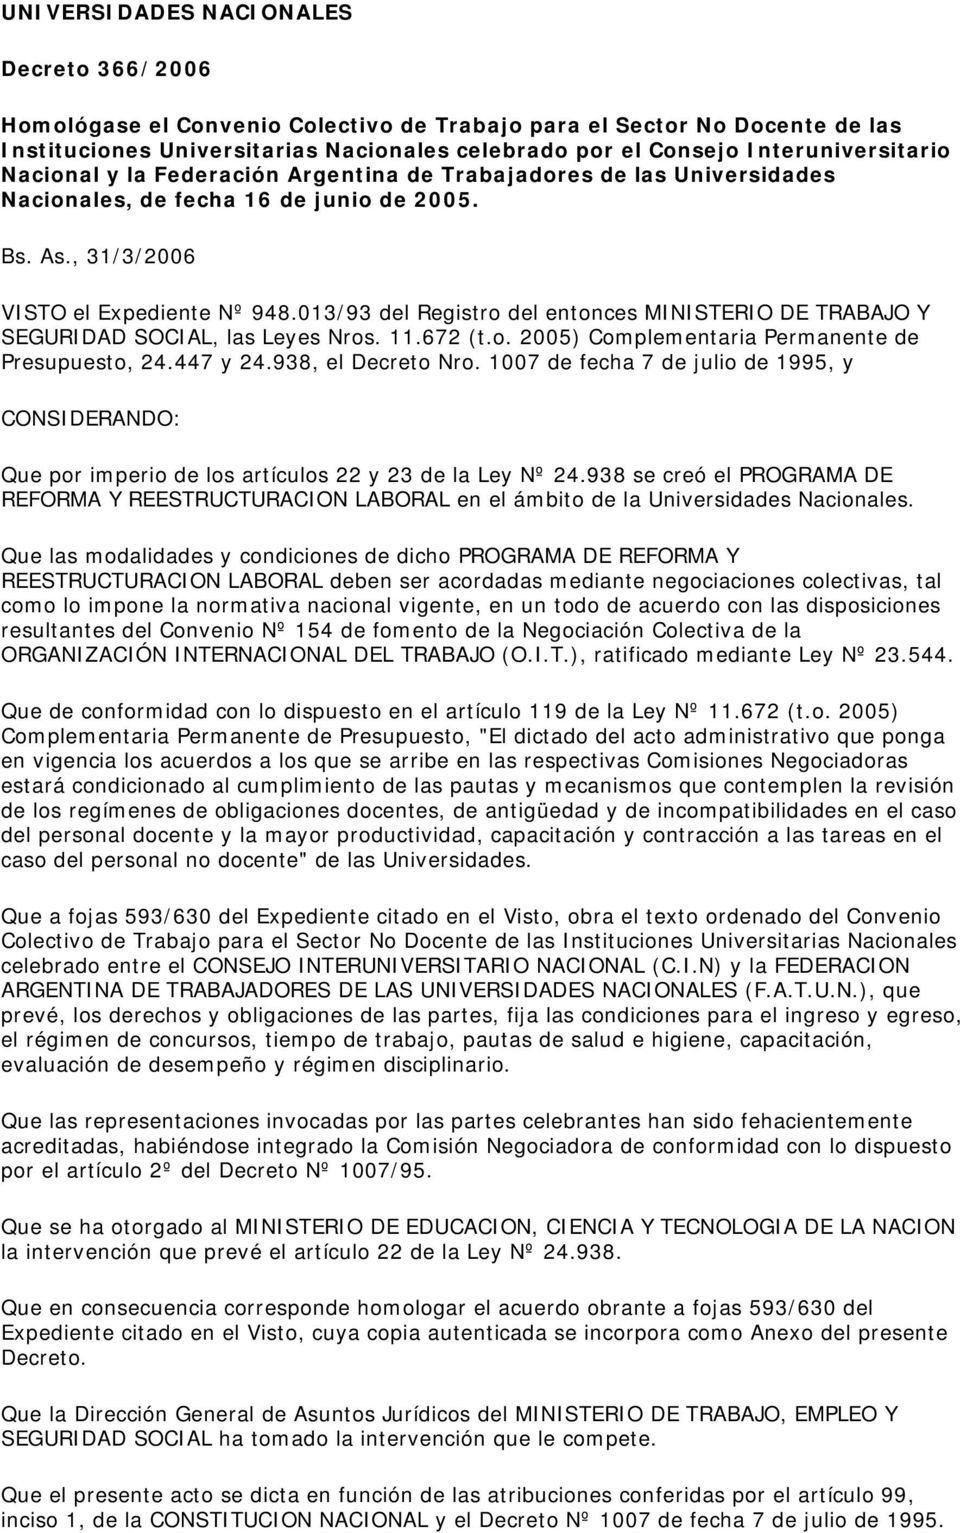 013/93 del Registro del entonces MINISTERIO DE TRABAJO Y SEGURIDAD SOCIAL, las Leyes Nros. 11.672 (t.o. 2005) Complementaria Permanente de Presupuesto, 24.447 y 24.938, el Decreto Nro.